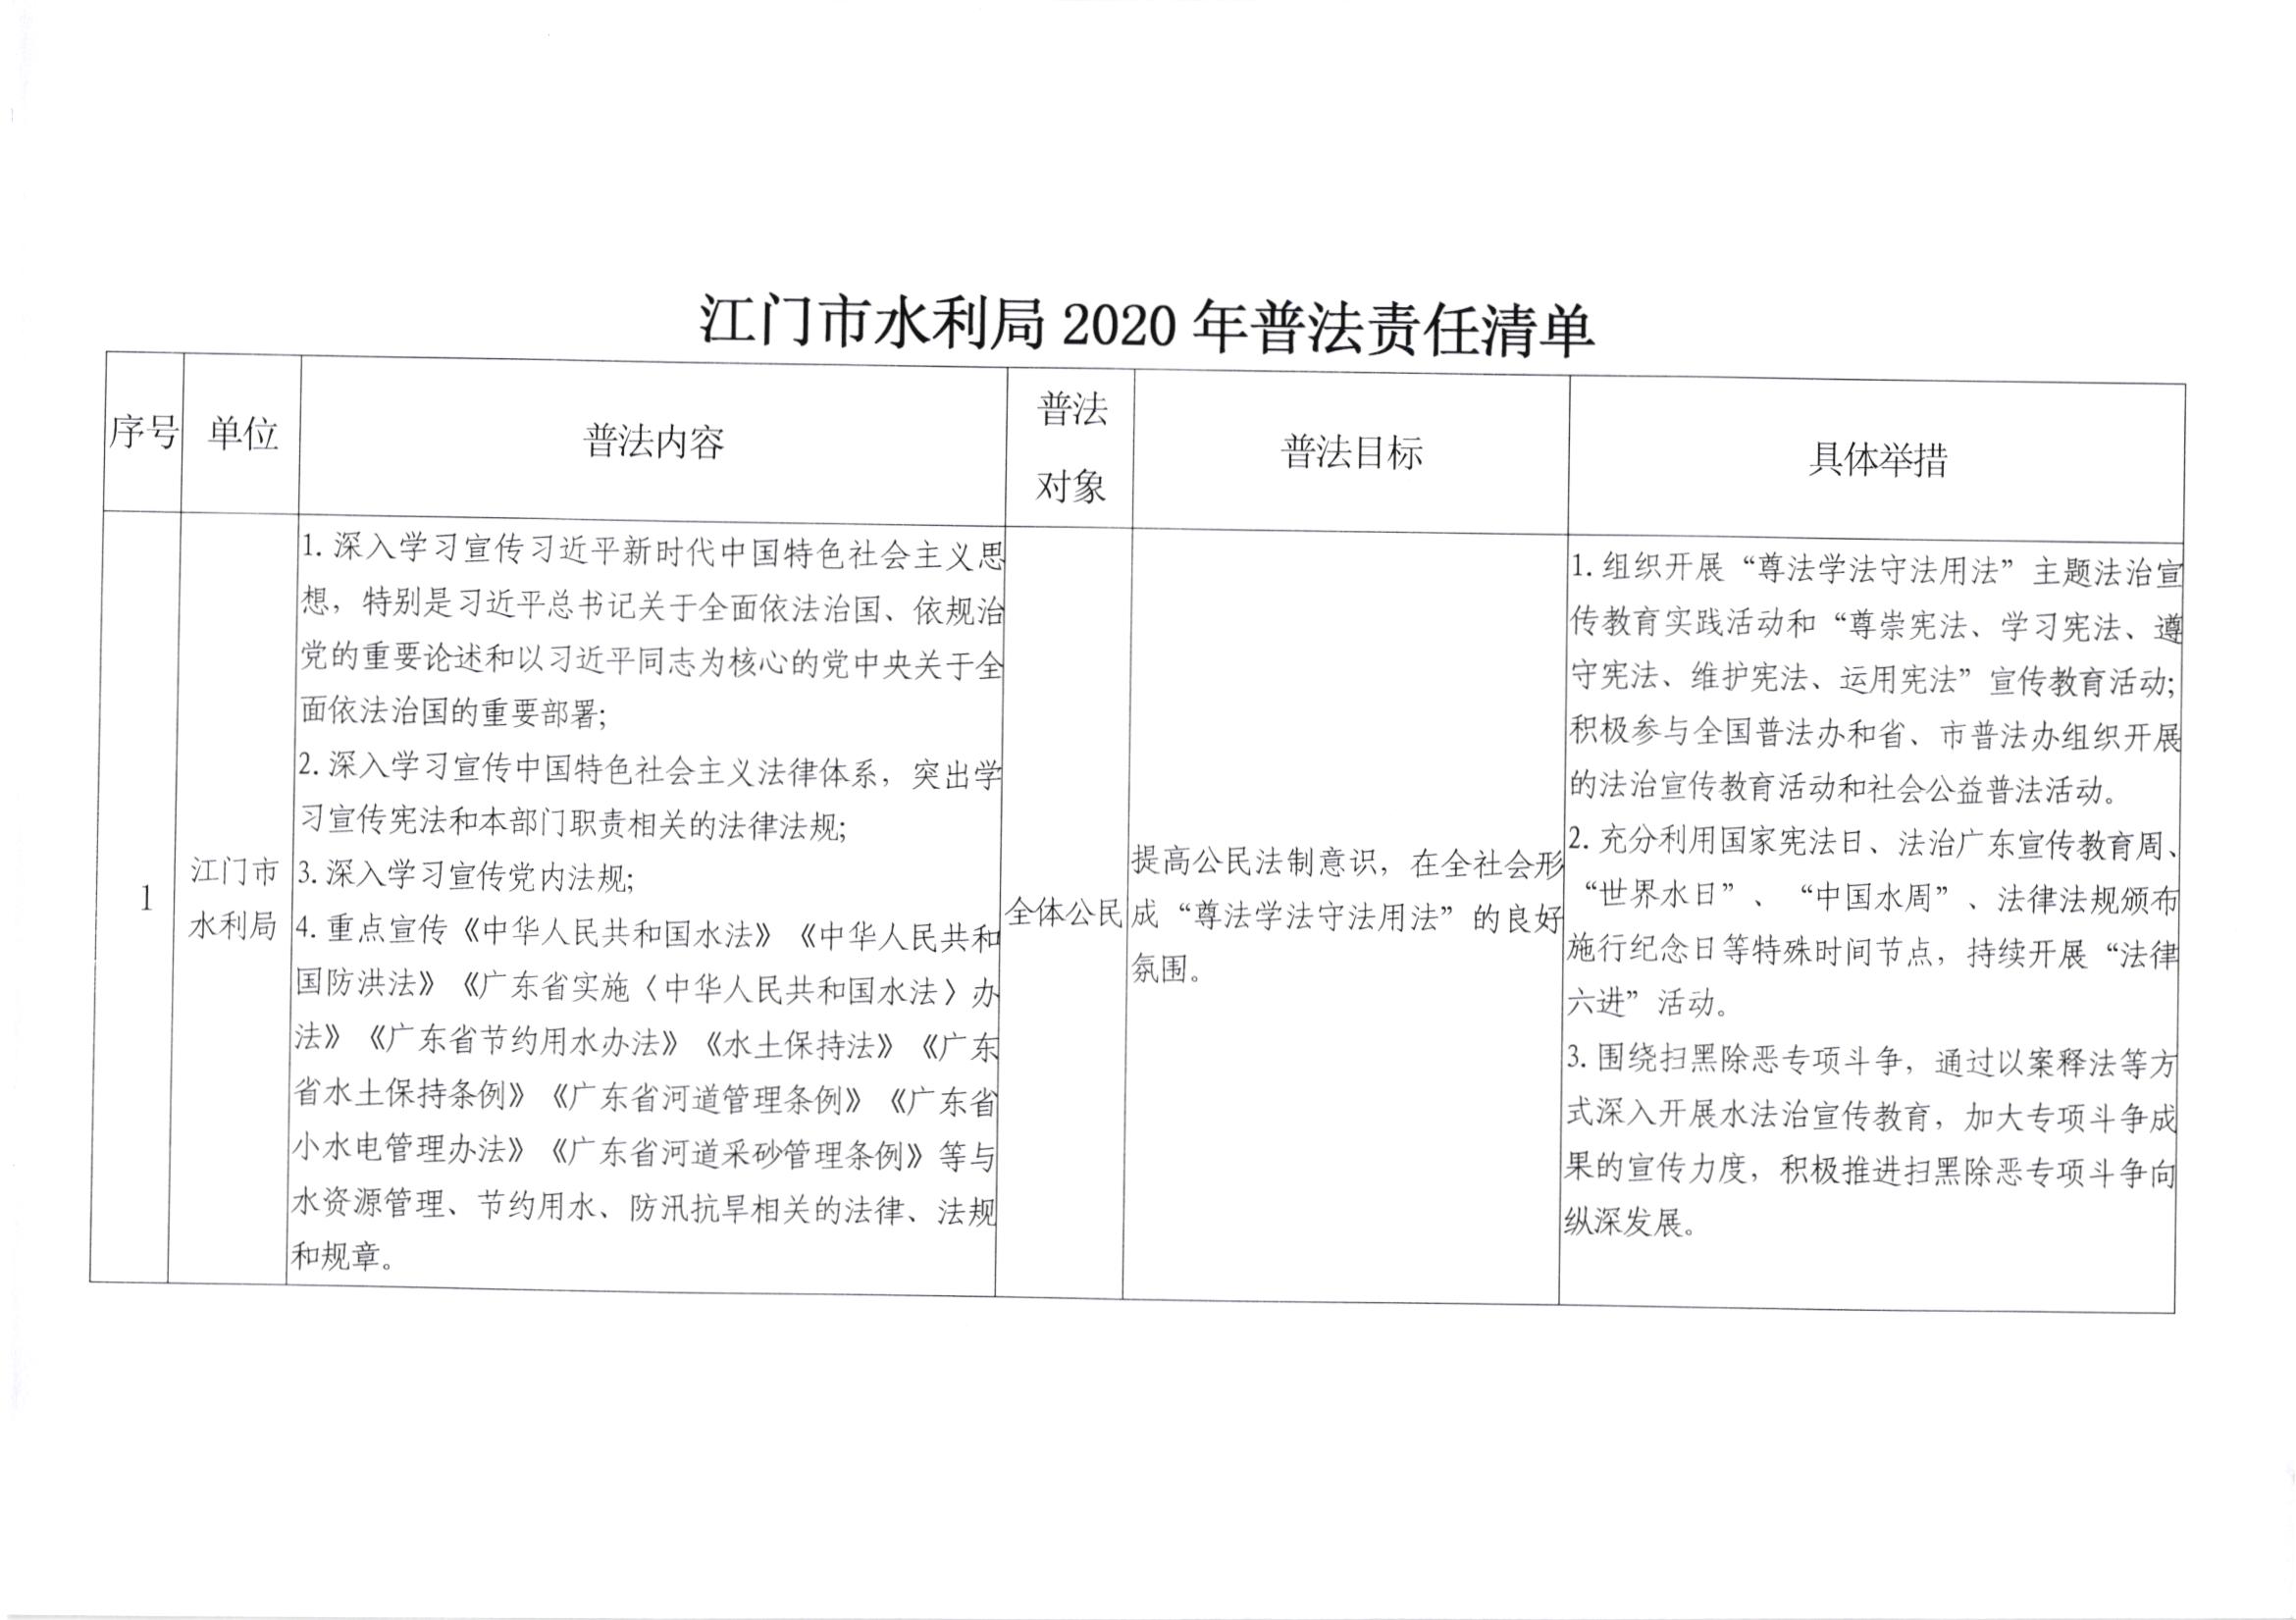 关于印发《江门市水利局2020年普法责任清单》的通知_001.jpg